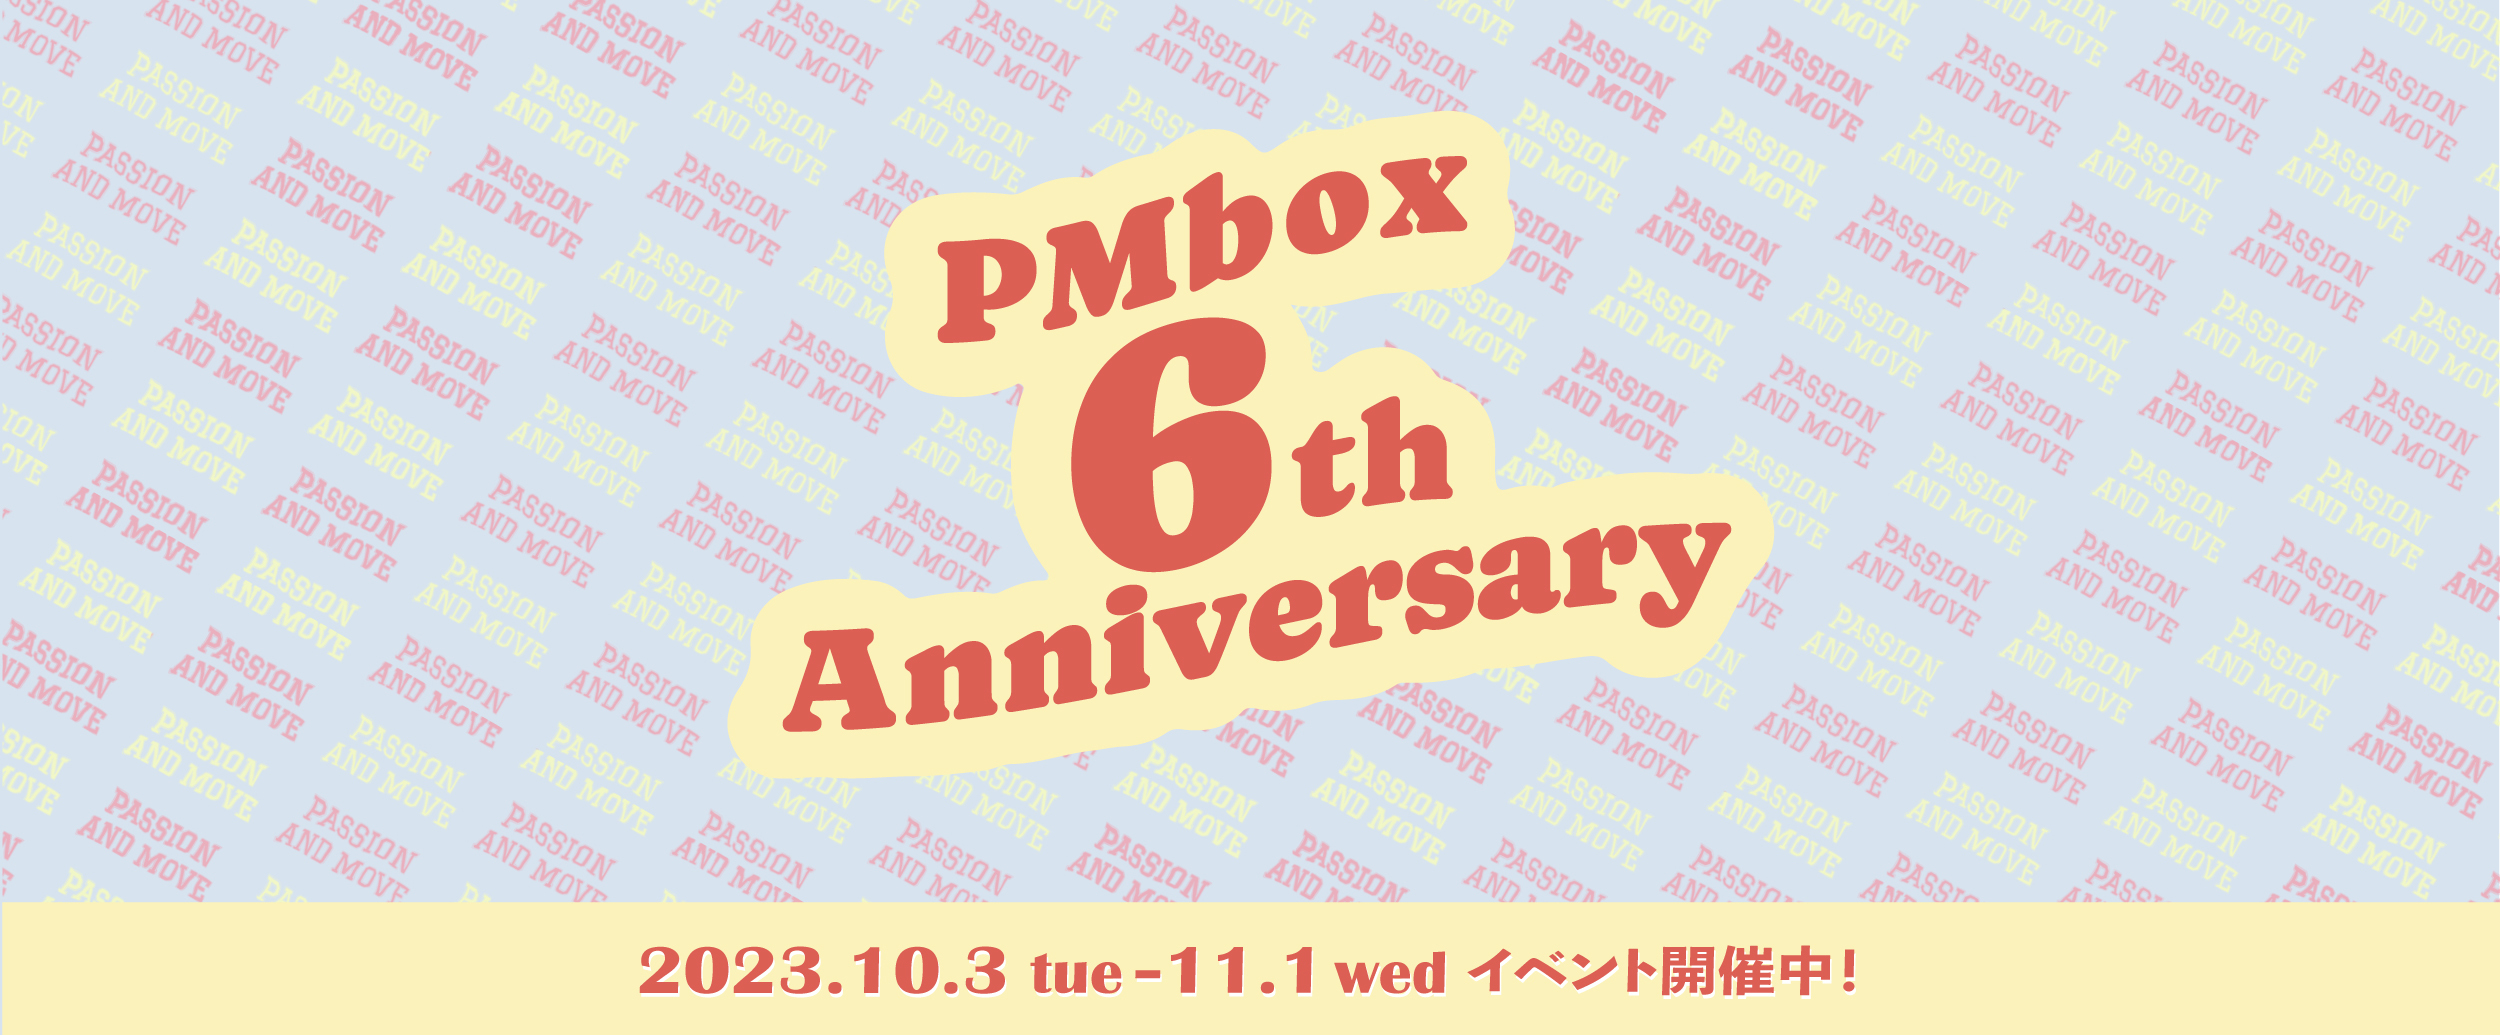 PMbox 6th Anniversary